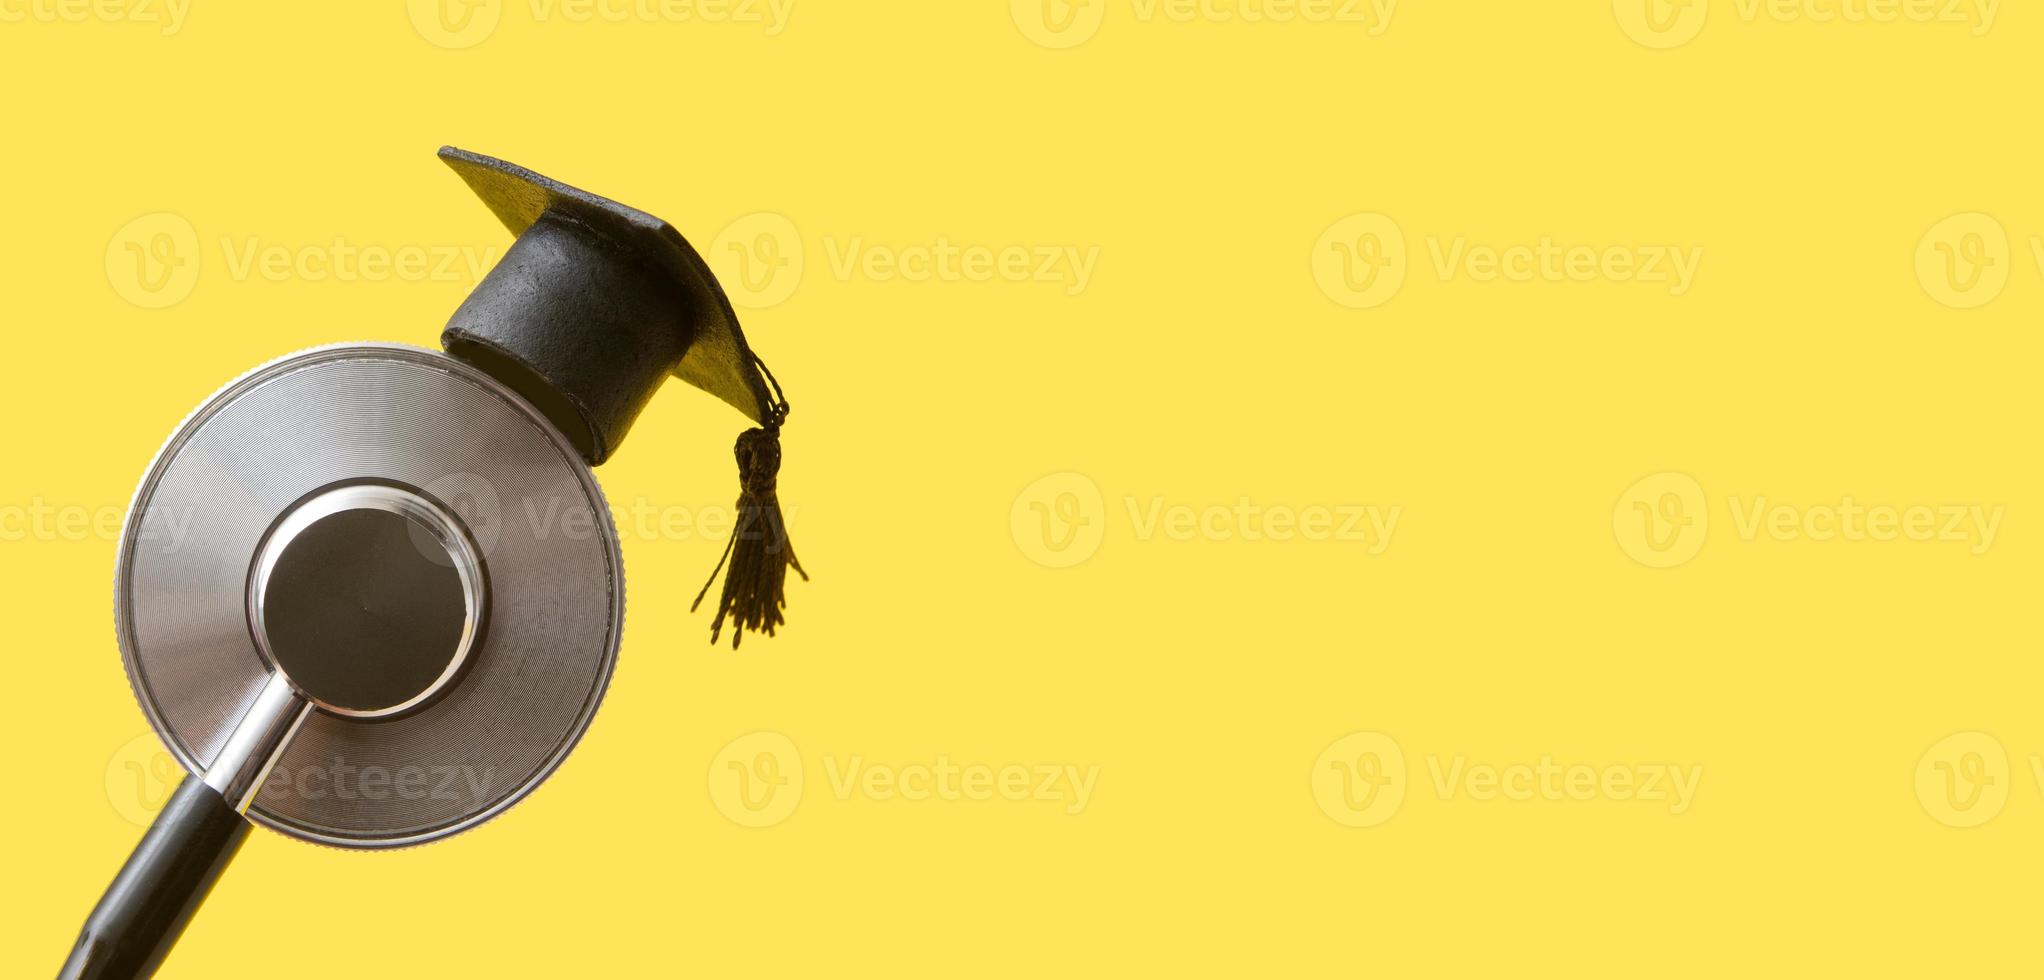 chapeau de graduation sur stéthoscope médical, fond jaune avec format de bannière d'espace de copie. école de médecine, éducation aux soins de santé ou concept de diplôme universitaire de médecin photo